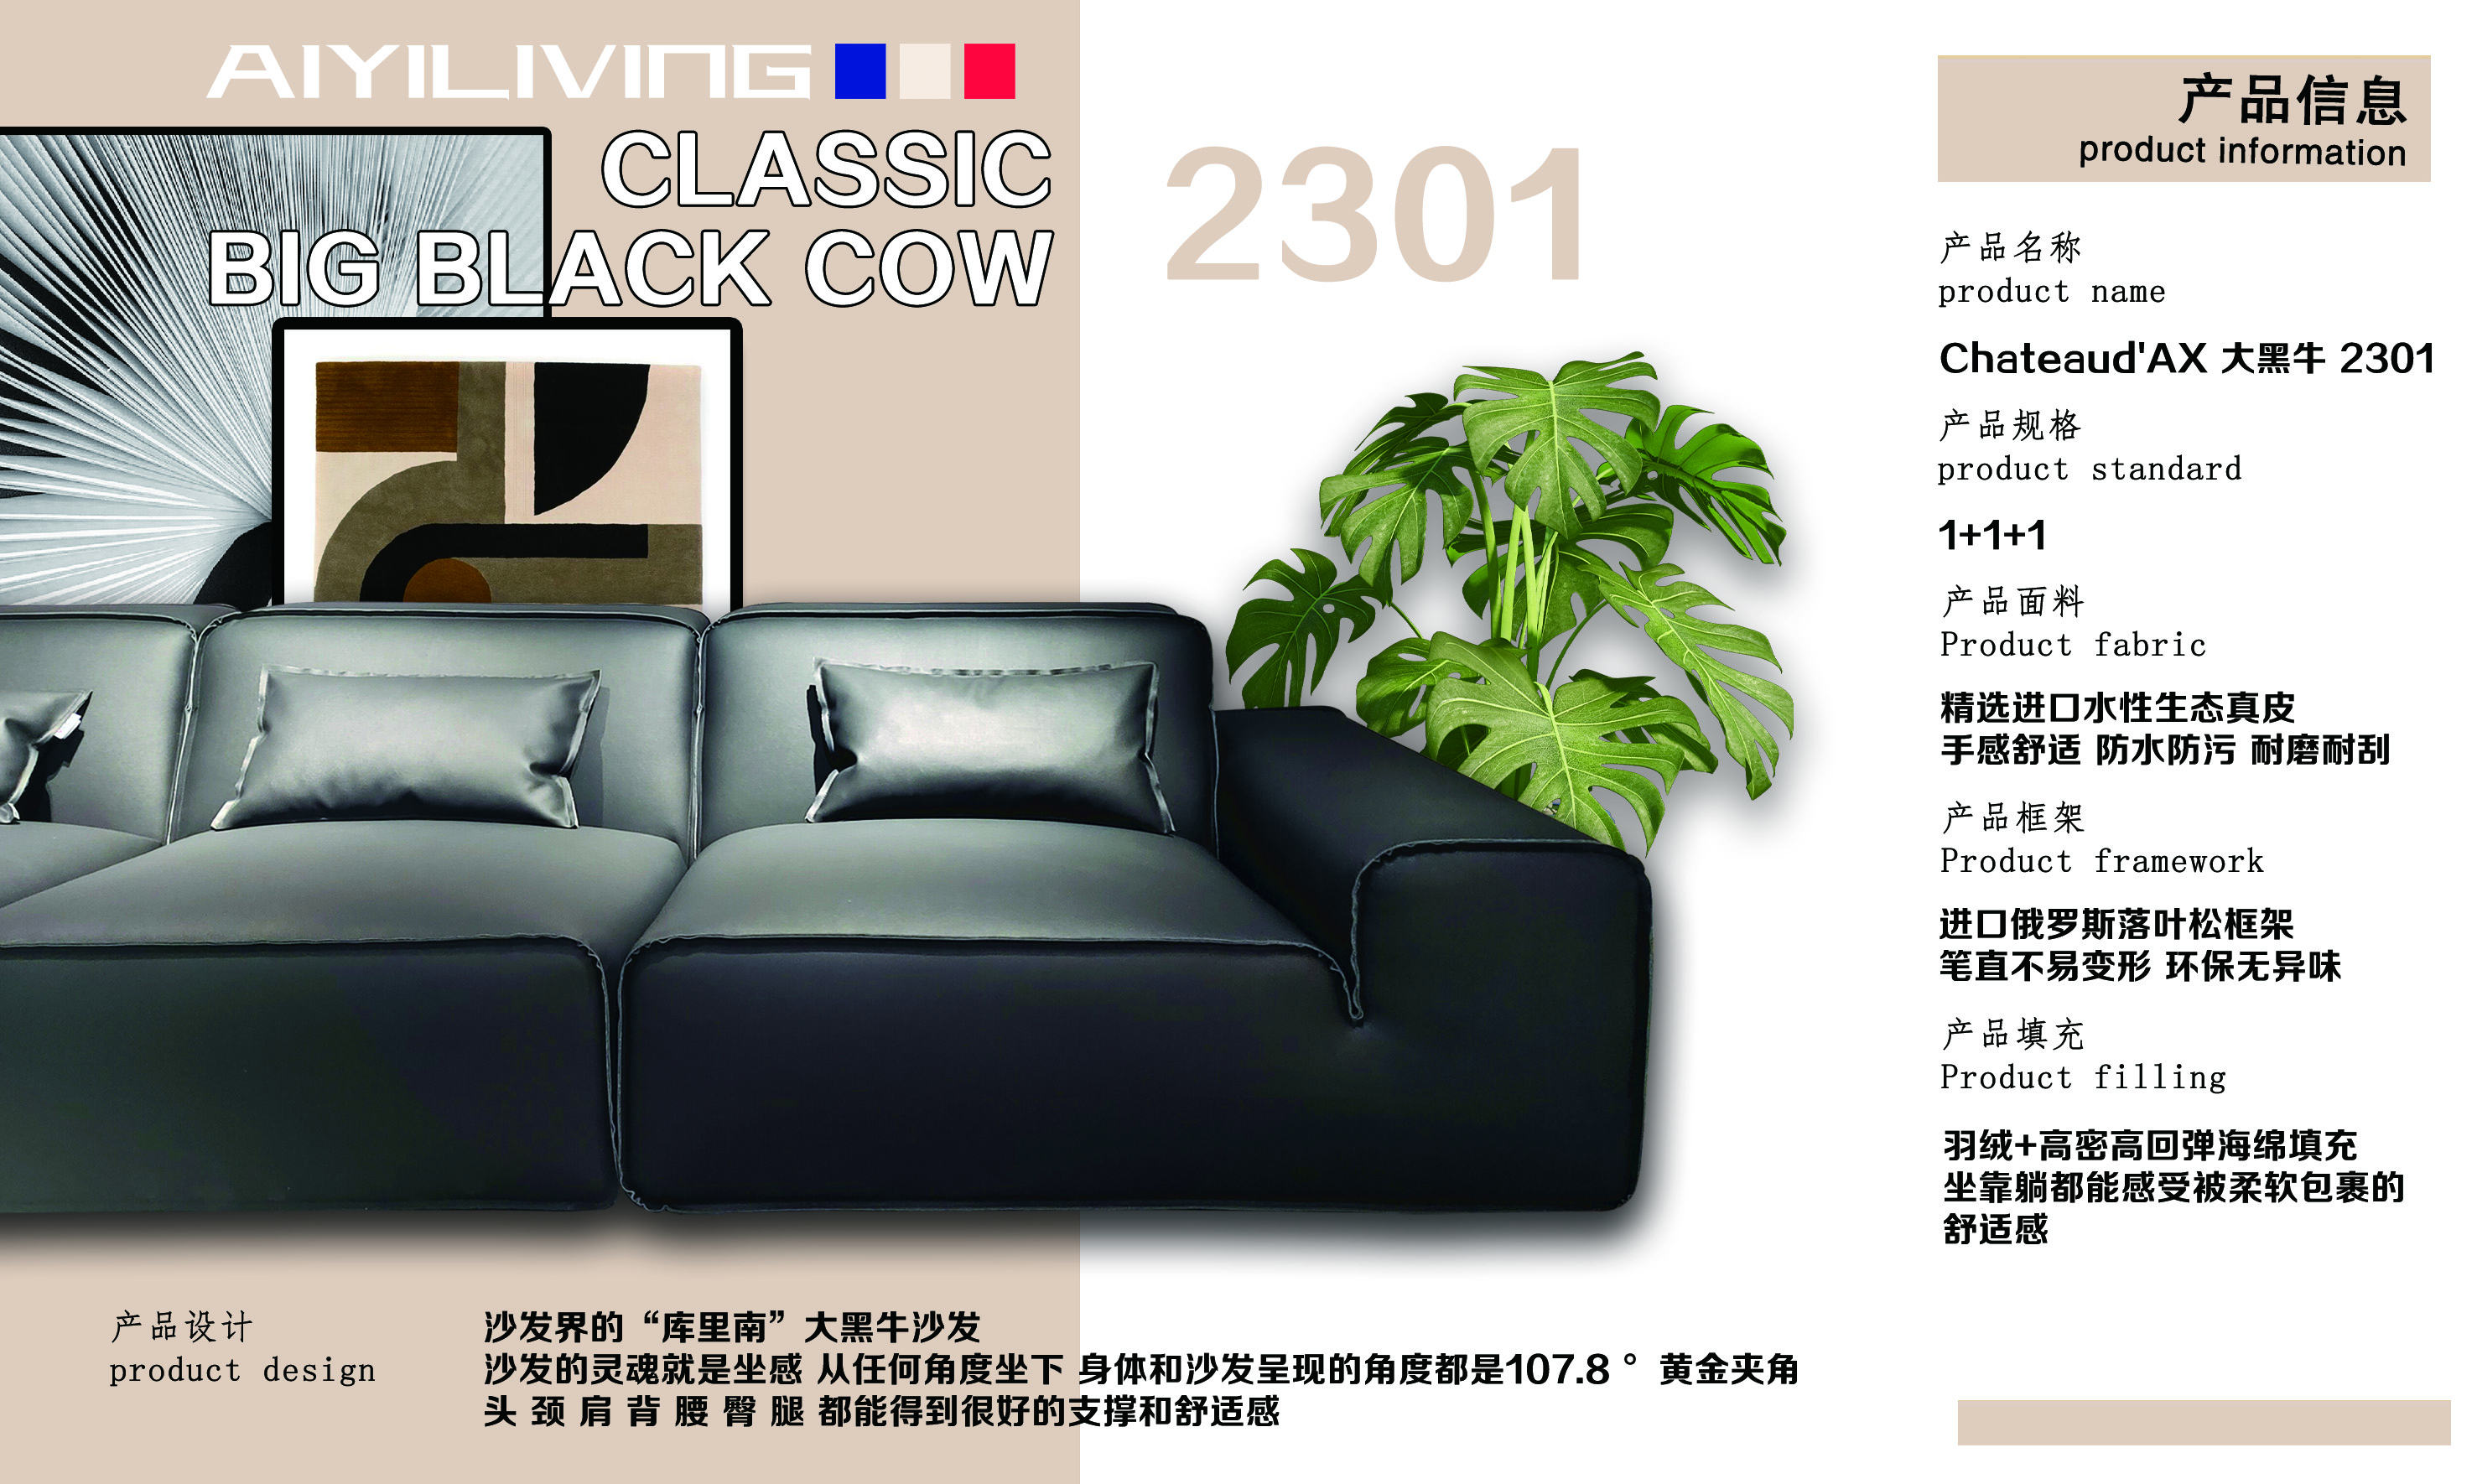 大黑牛 产品信息 2301